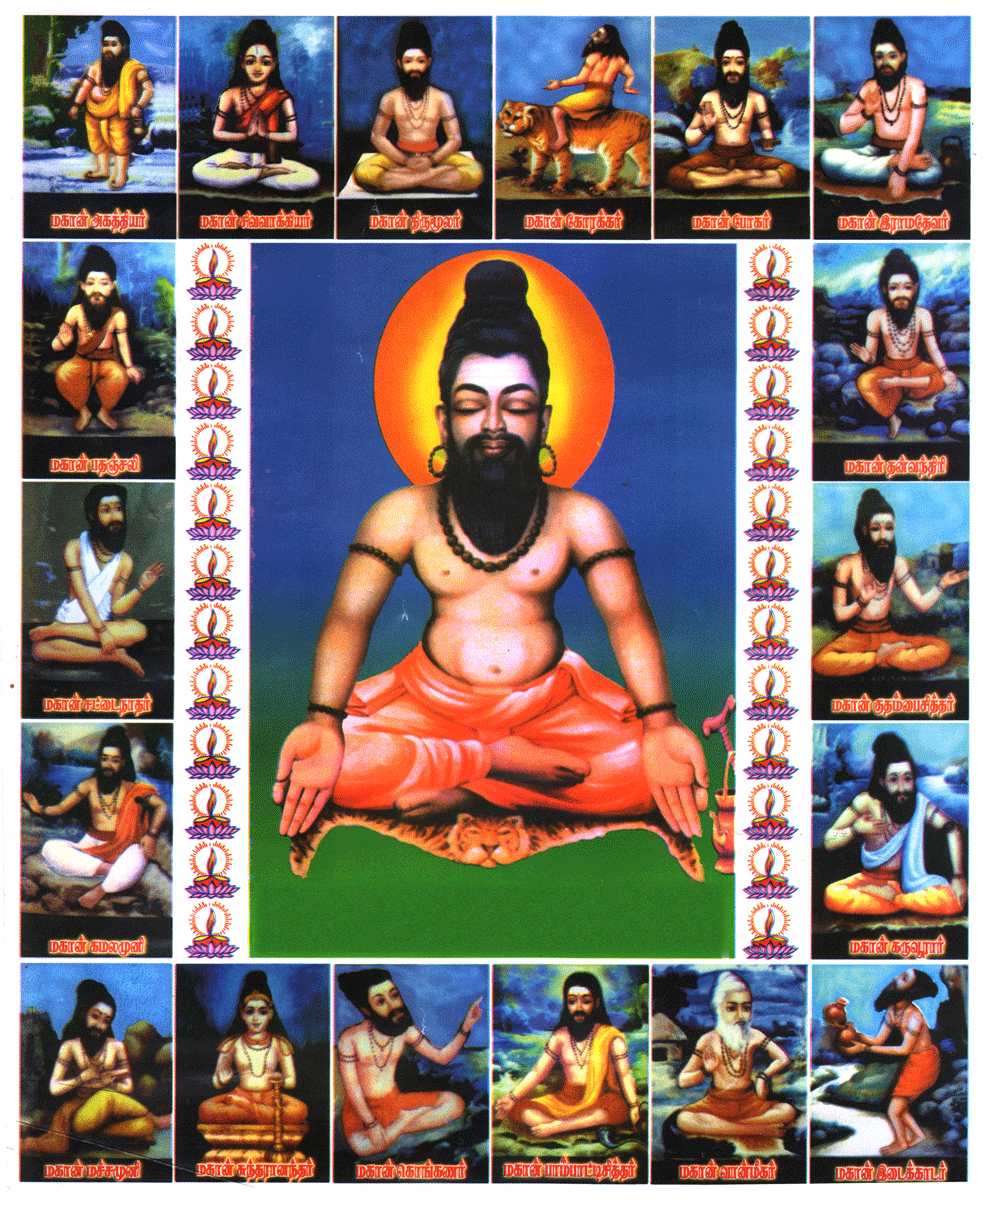 siddhar by rasi – Hindu Dharma (Sanatana Dharma)